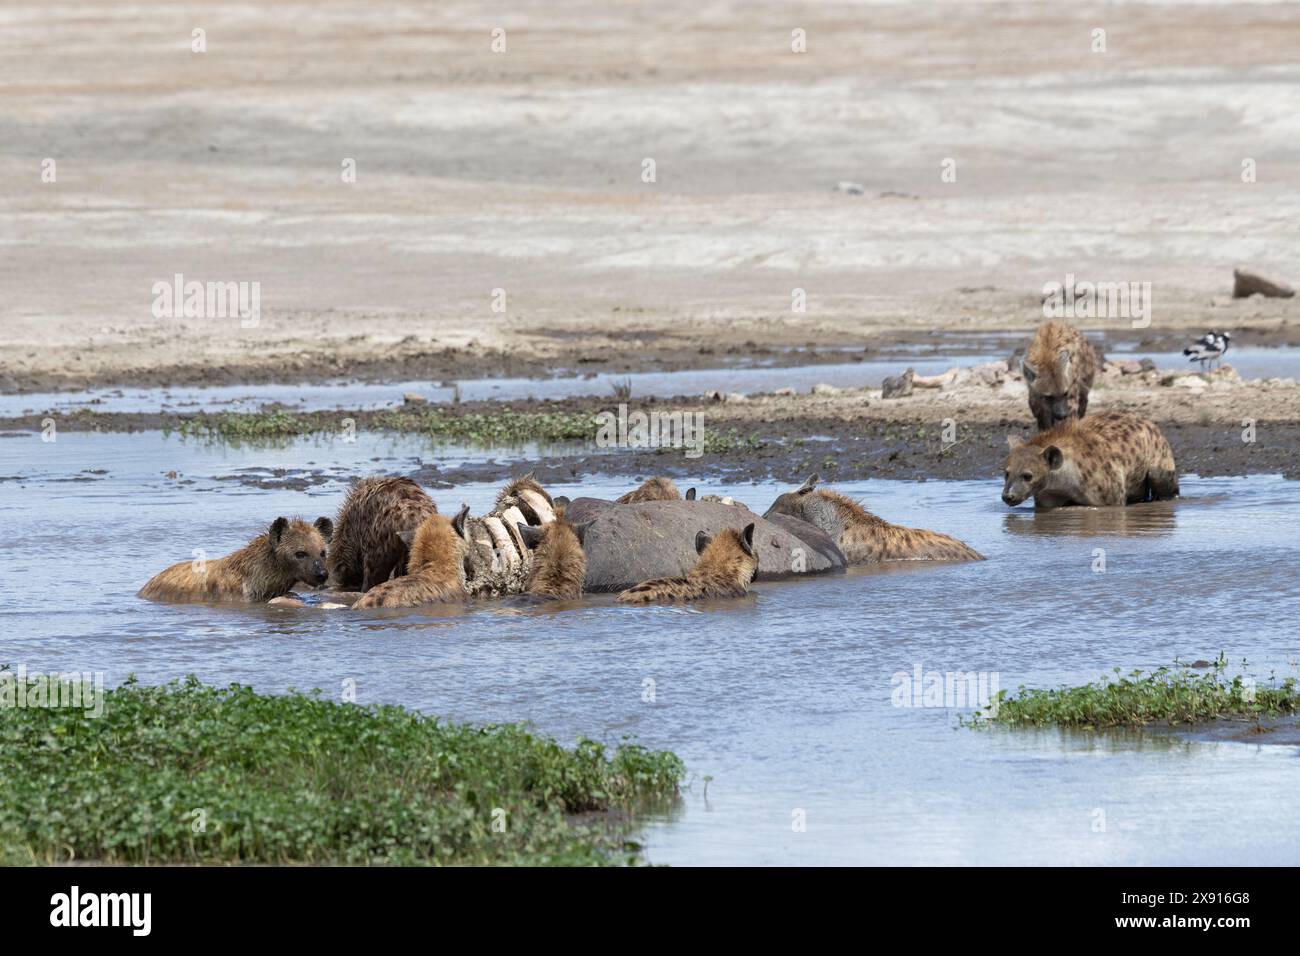 Im rohen Drama des Lebenskreises der Natur schmecken Hyänen an einem Nilpferdekadaver und veranschaulichen den unerbittlichen Zyklus des Überlebens in der afrikanischen Wildnis. Stockfoto